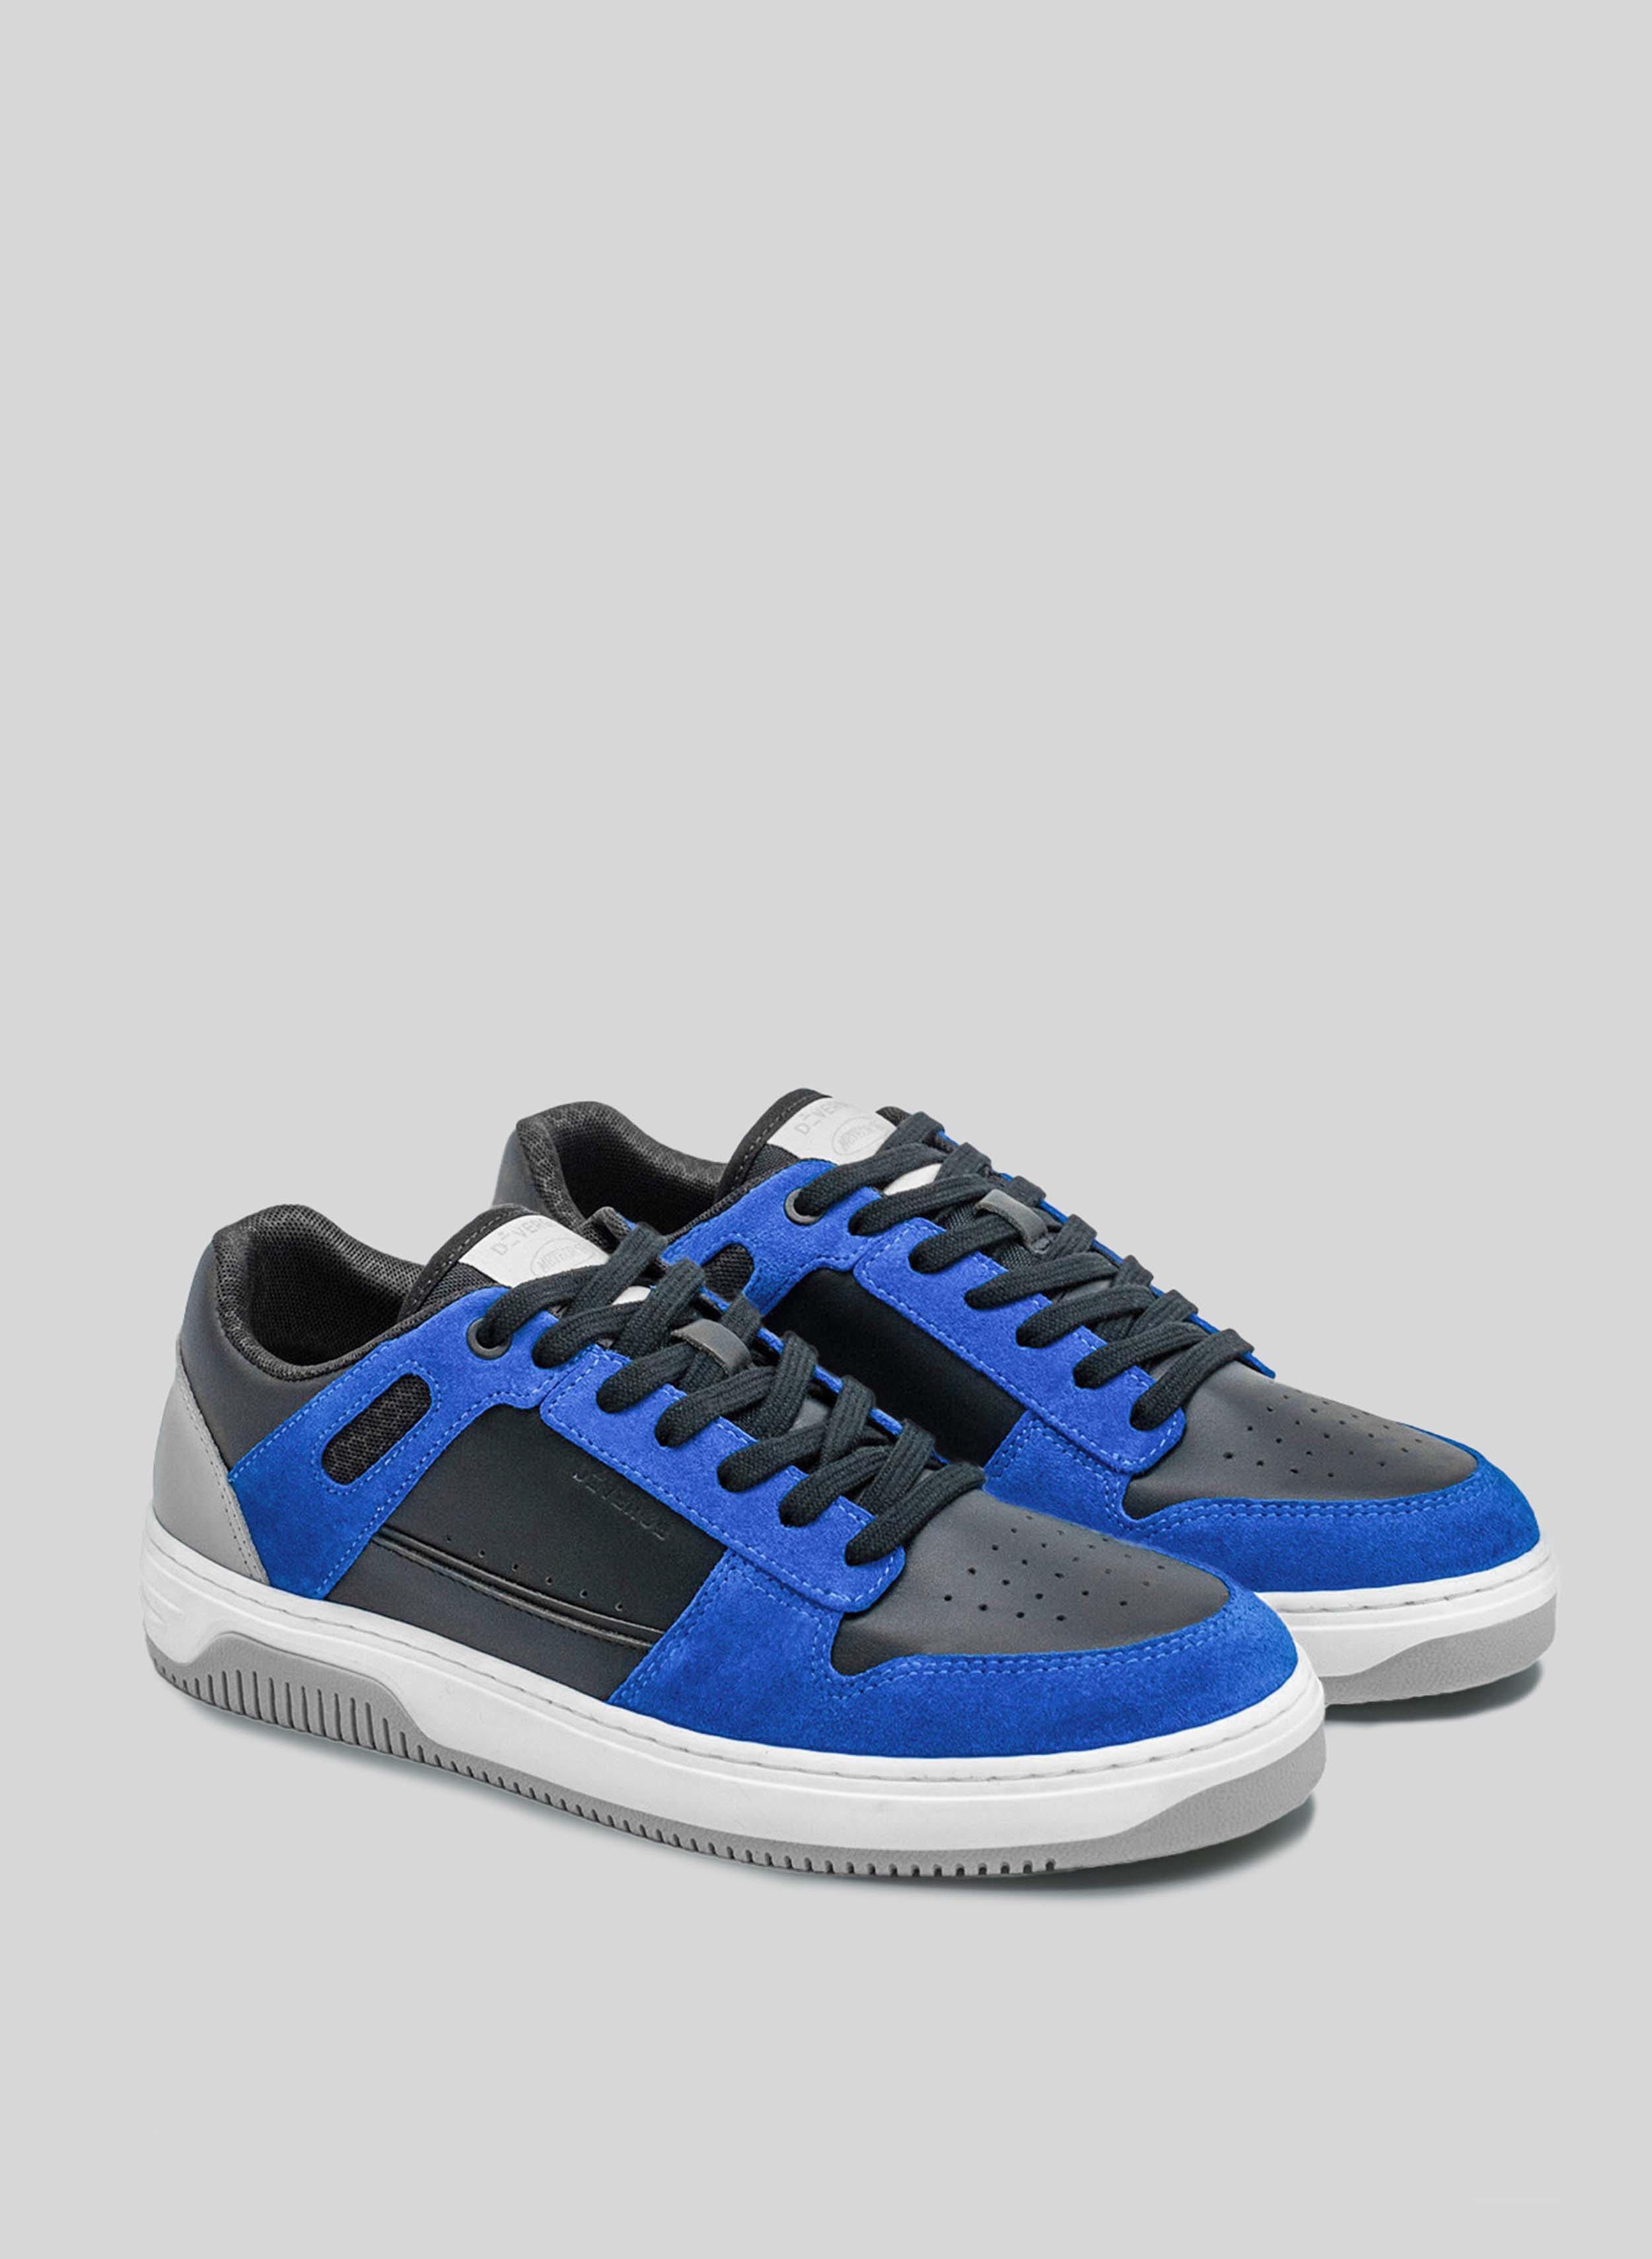 sneakers blu e nero con suola bianca e grigia di Diverge, che promuove l'impatto sociale e le scarpe personalizzate attraverso il progetto imagine. 